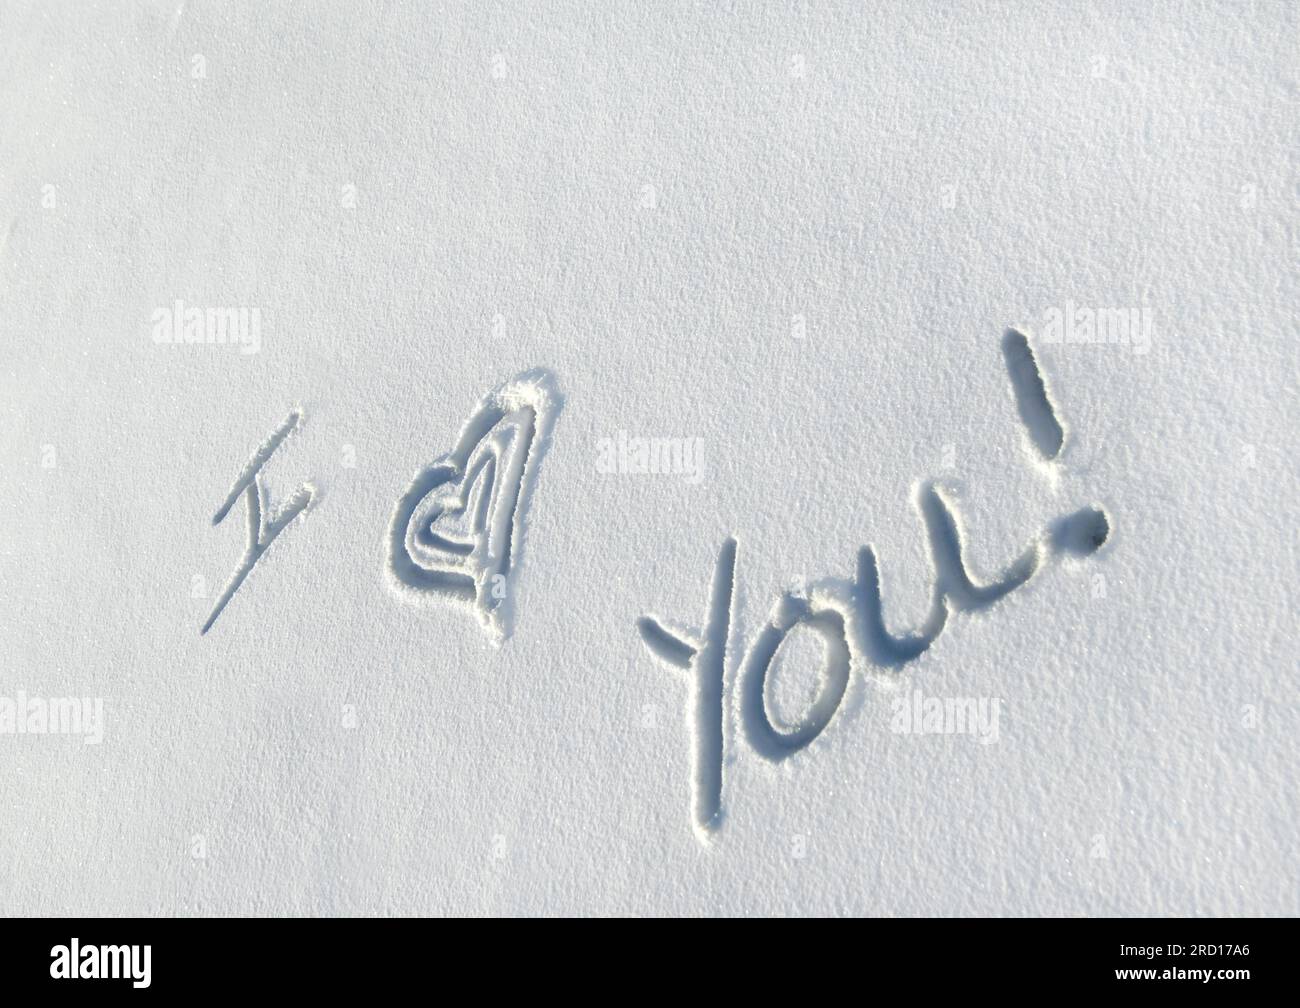 Nachricht in eine frische Schicht Schnee geschrieben sagt "Ich liebe dich."  Dieser Schnee-Liebhaber ersetzt eine handgezeichnete Herz zu ersetzen "Liebe." Stockfoto